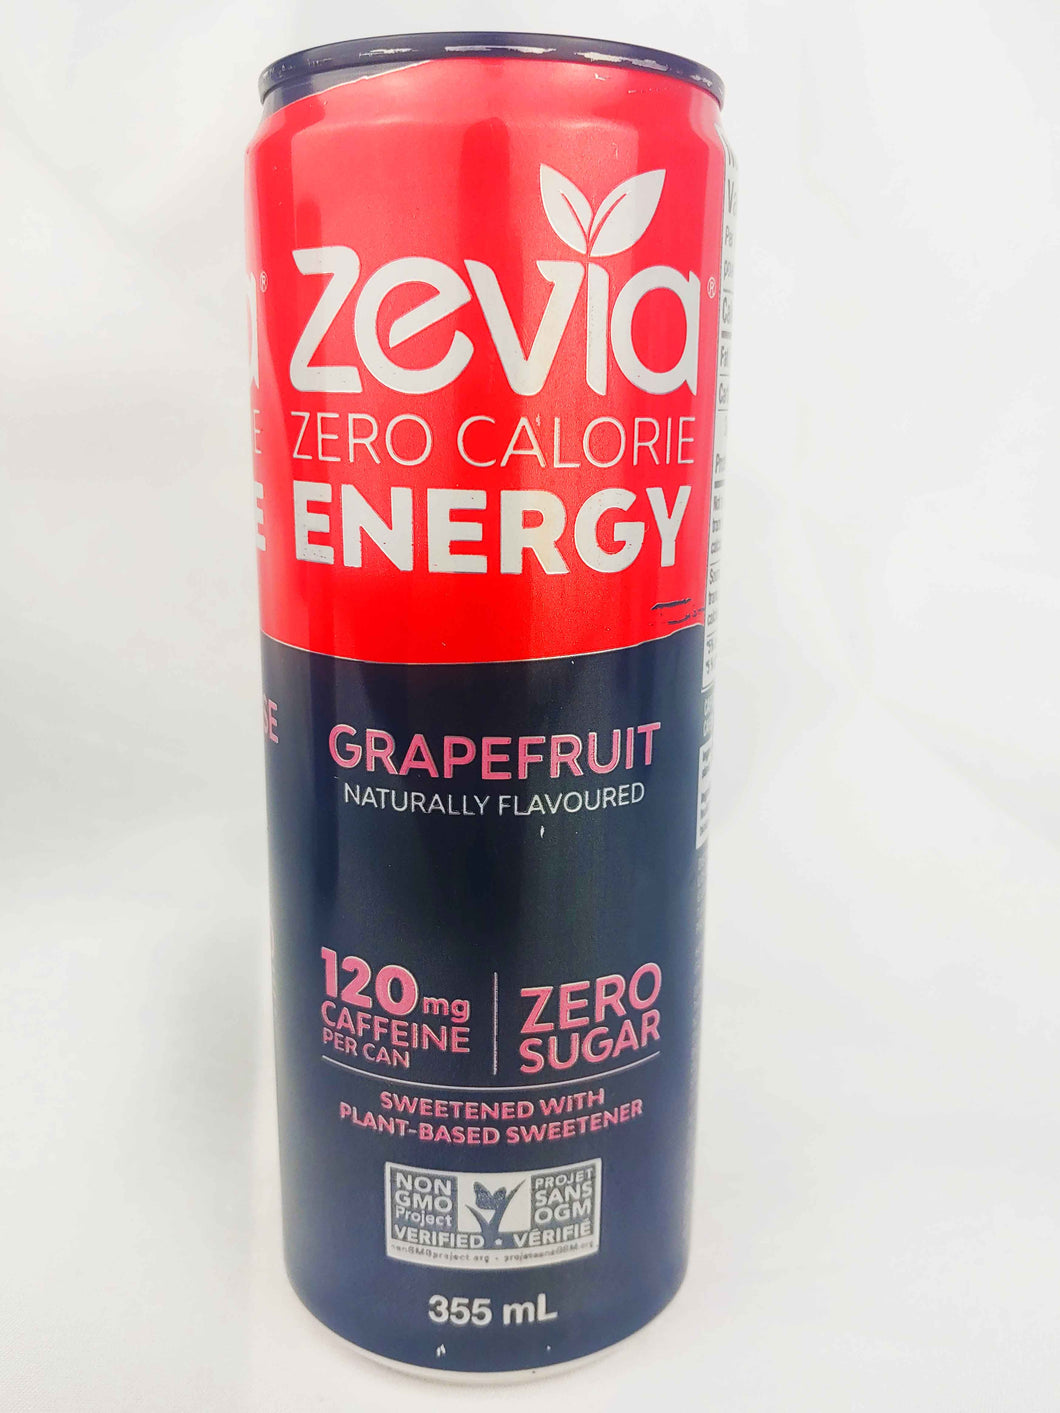 Zevia Energy Zero Calorie, Zero Sugar 120mg Caffeine Beverage